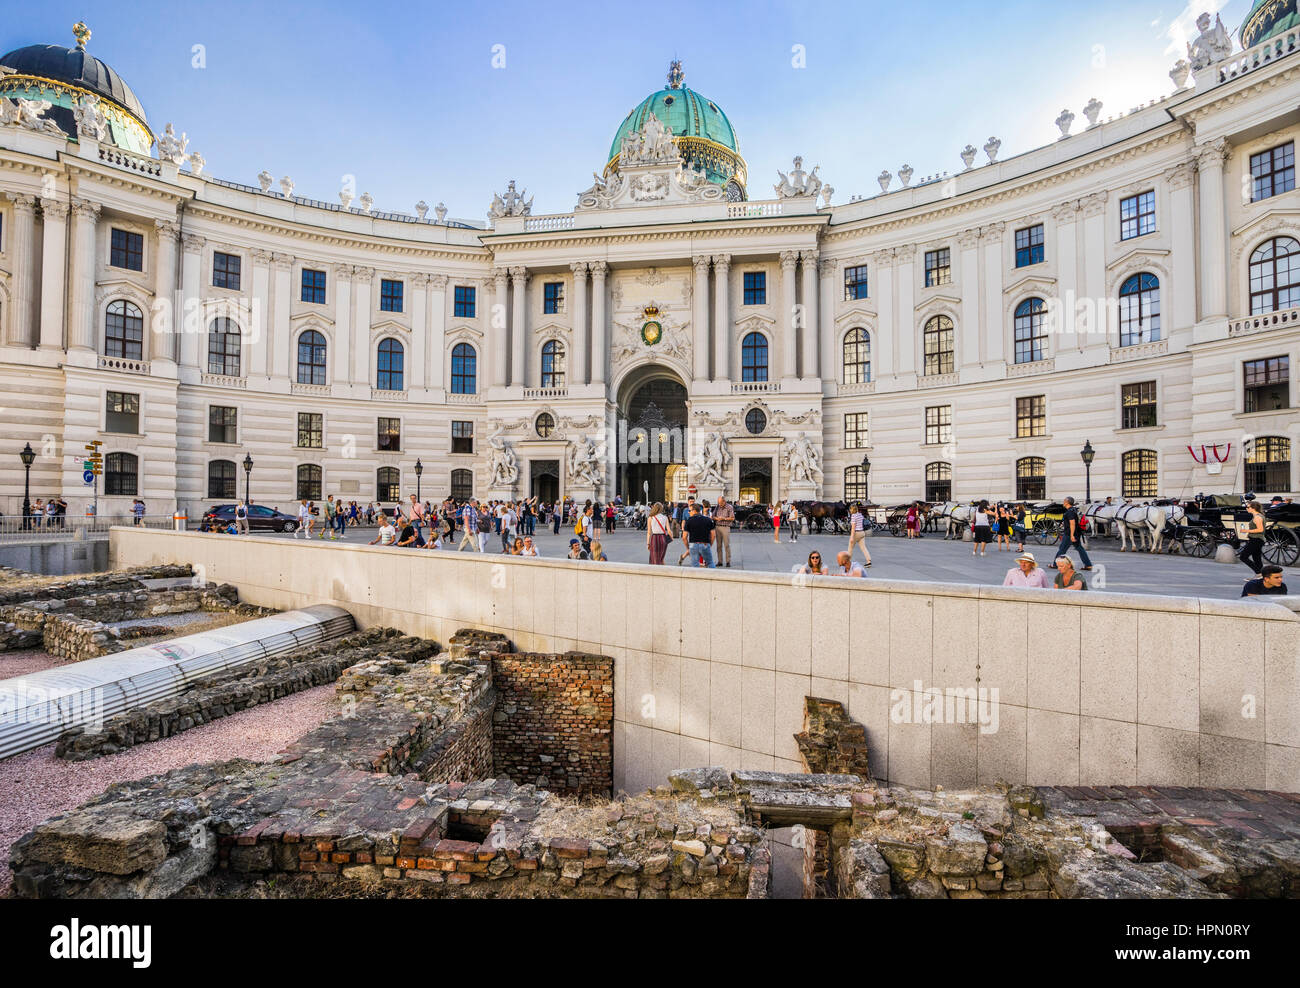 L'Autriche, Vienne, Michaelerplatz, les vestiges archéologiques de la poste romain Vindobona à Michaelerplatz contre fond de la Hofburg de Vienne Banque D'Images